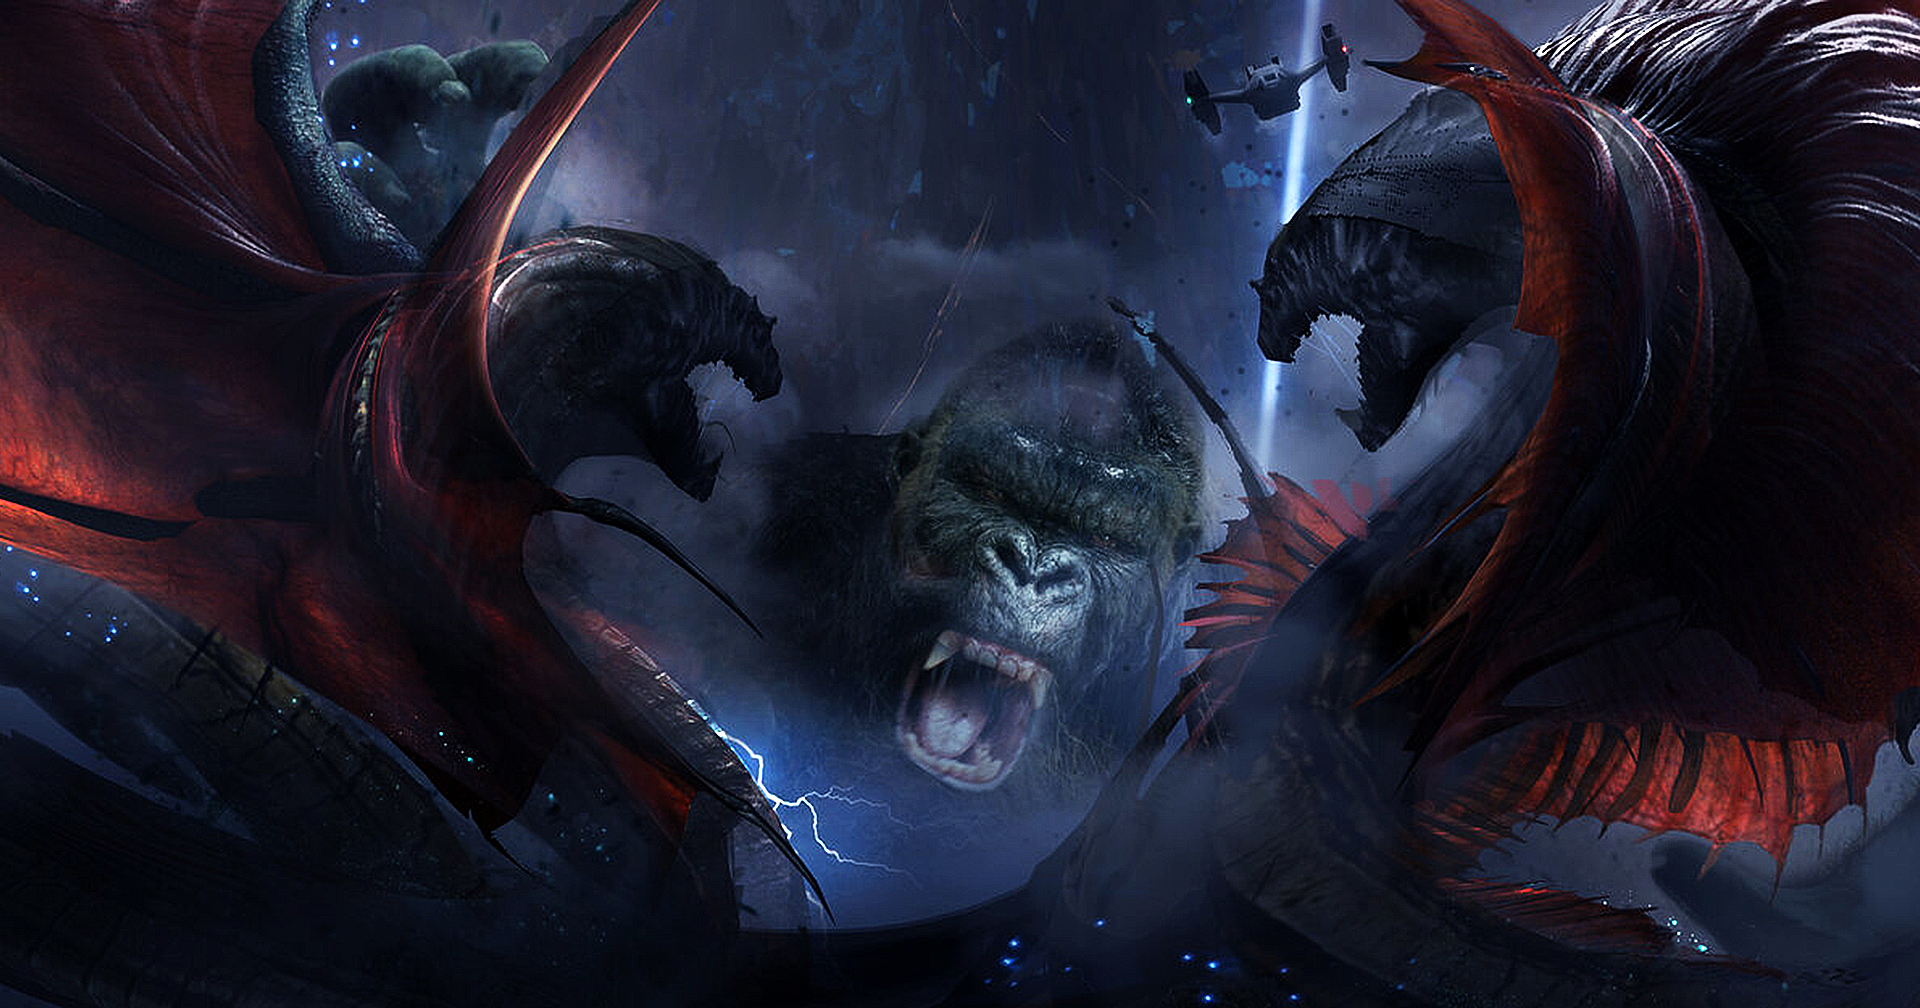 ชมภาพคอนเซปต์ ‘Godzilla vs. Kong’ : เผยงานดีไซน์มอนสเตอร์ยักษ์ที่ตัวใหญ่กว่าในภาพยนตร์จริง